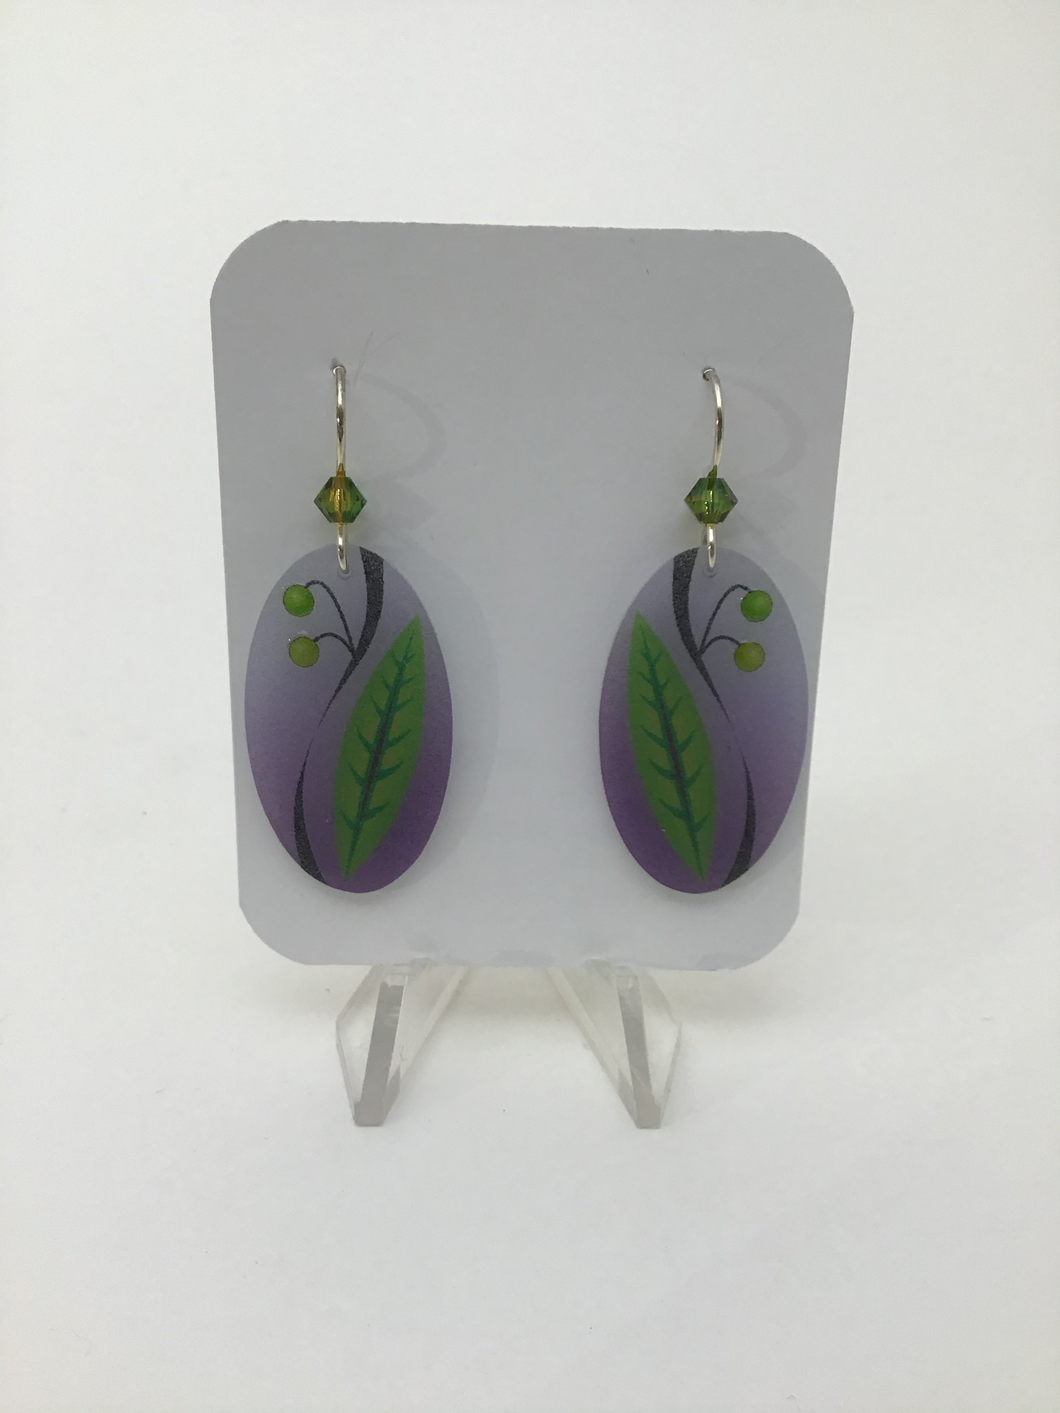 Karon Killian: Oval Sm Purple w/ Green Leaf Earrings